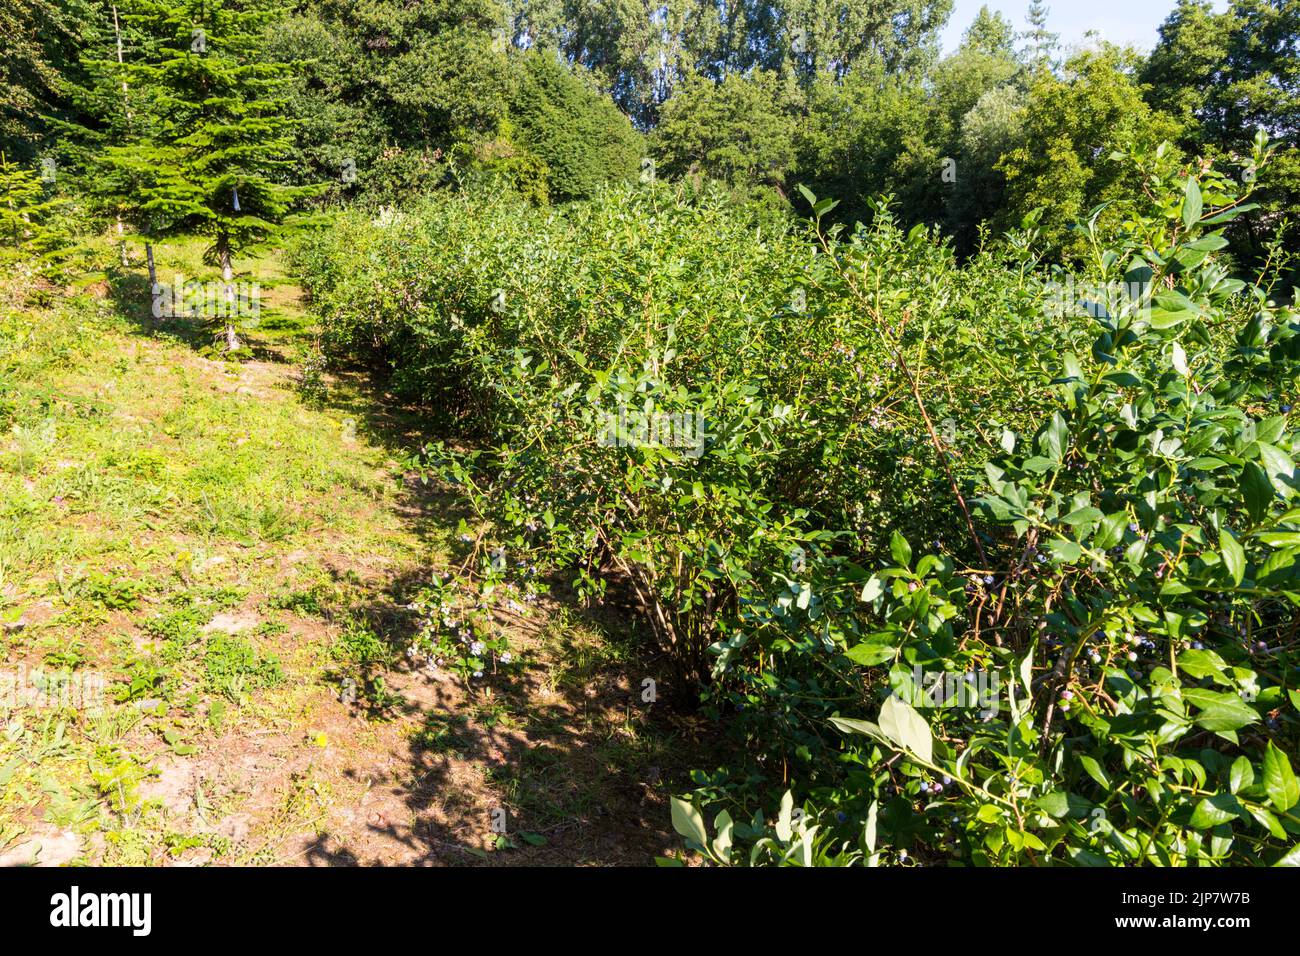 Northern highbush blueberry, Vaccinium corymbosum 'Bluecrop' grown in garden, Hungary, Europe Stock Photo